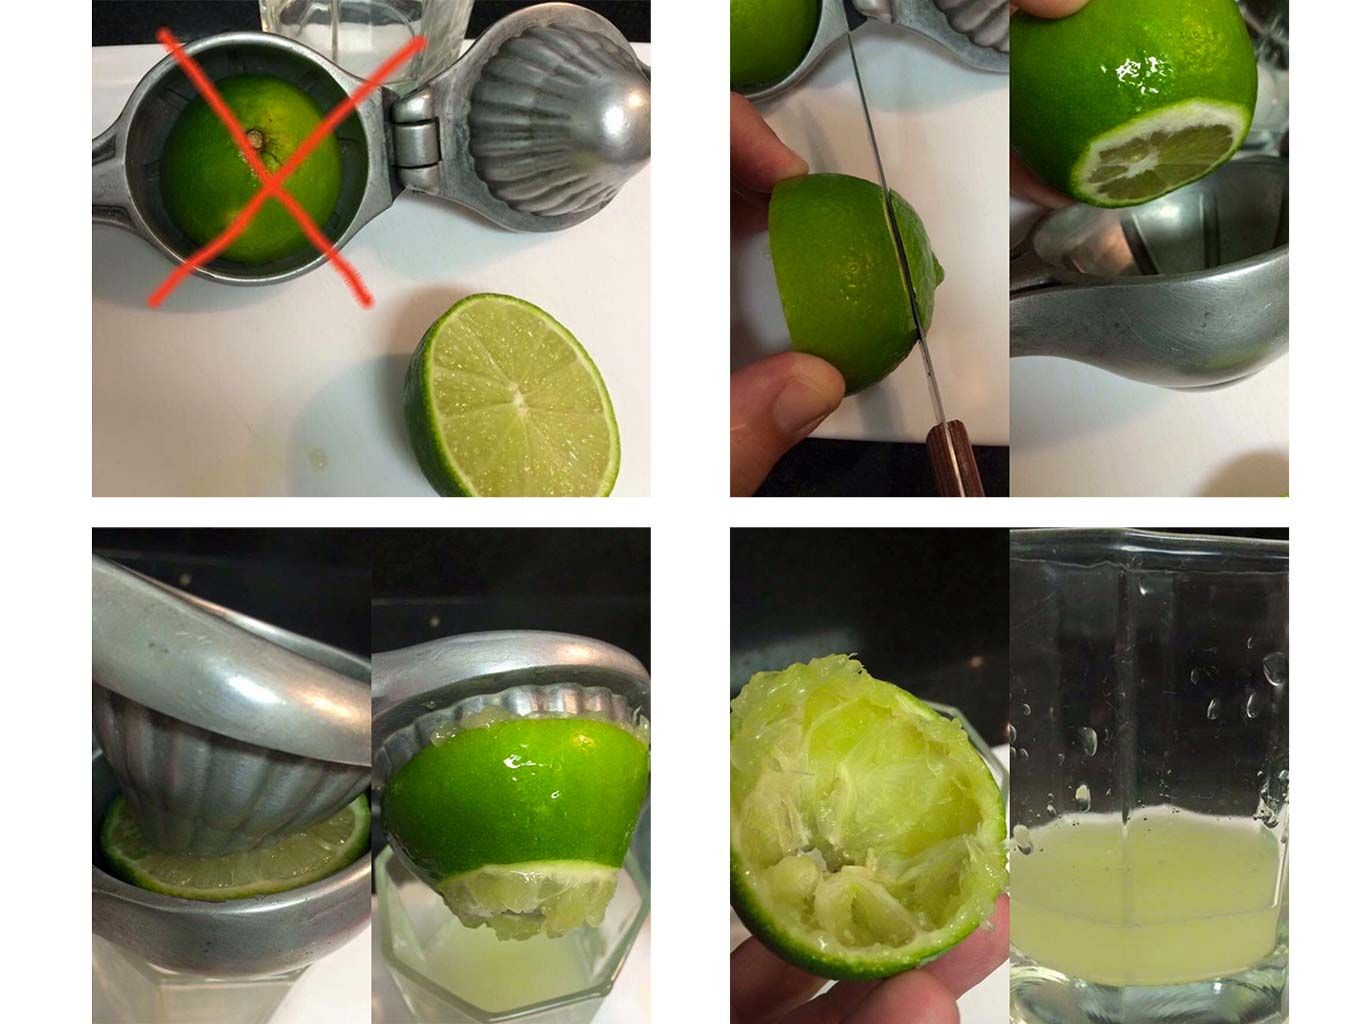 Cómo usar exprimidor de limones. Compra una exprimidora